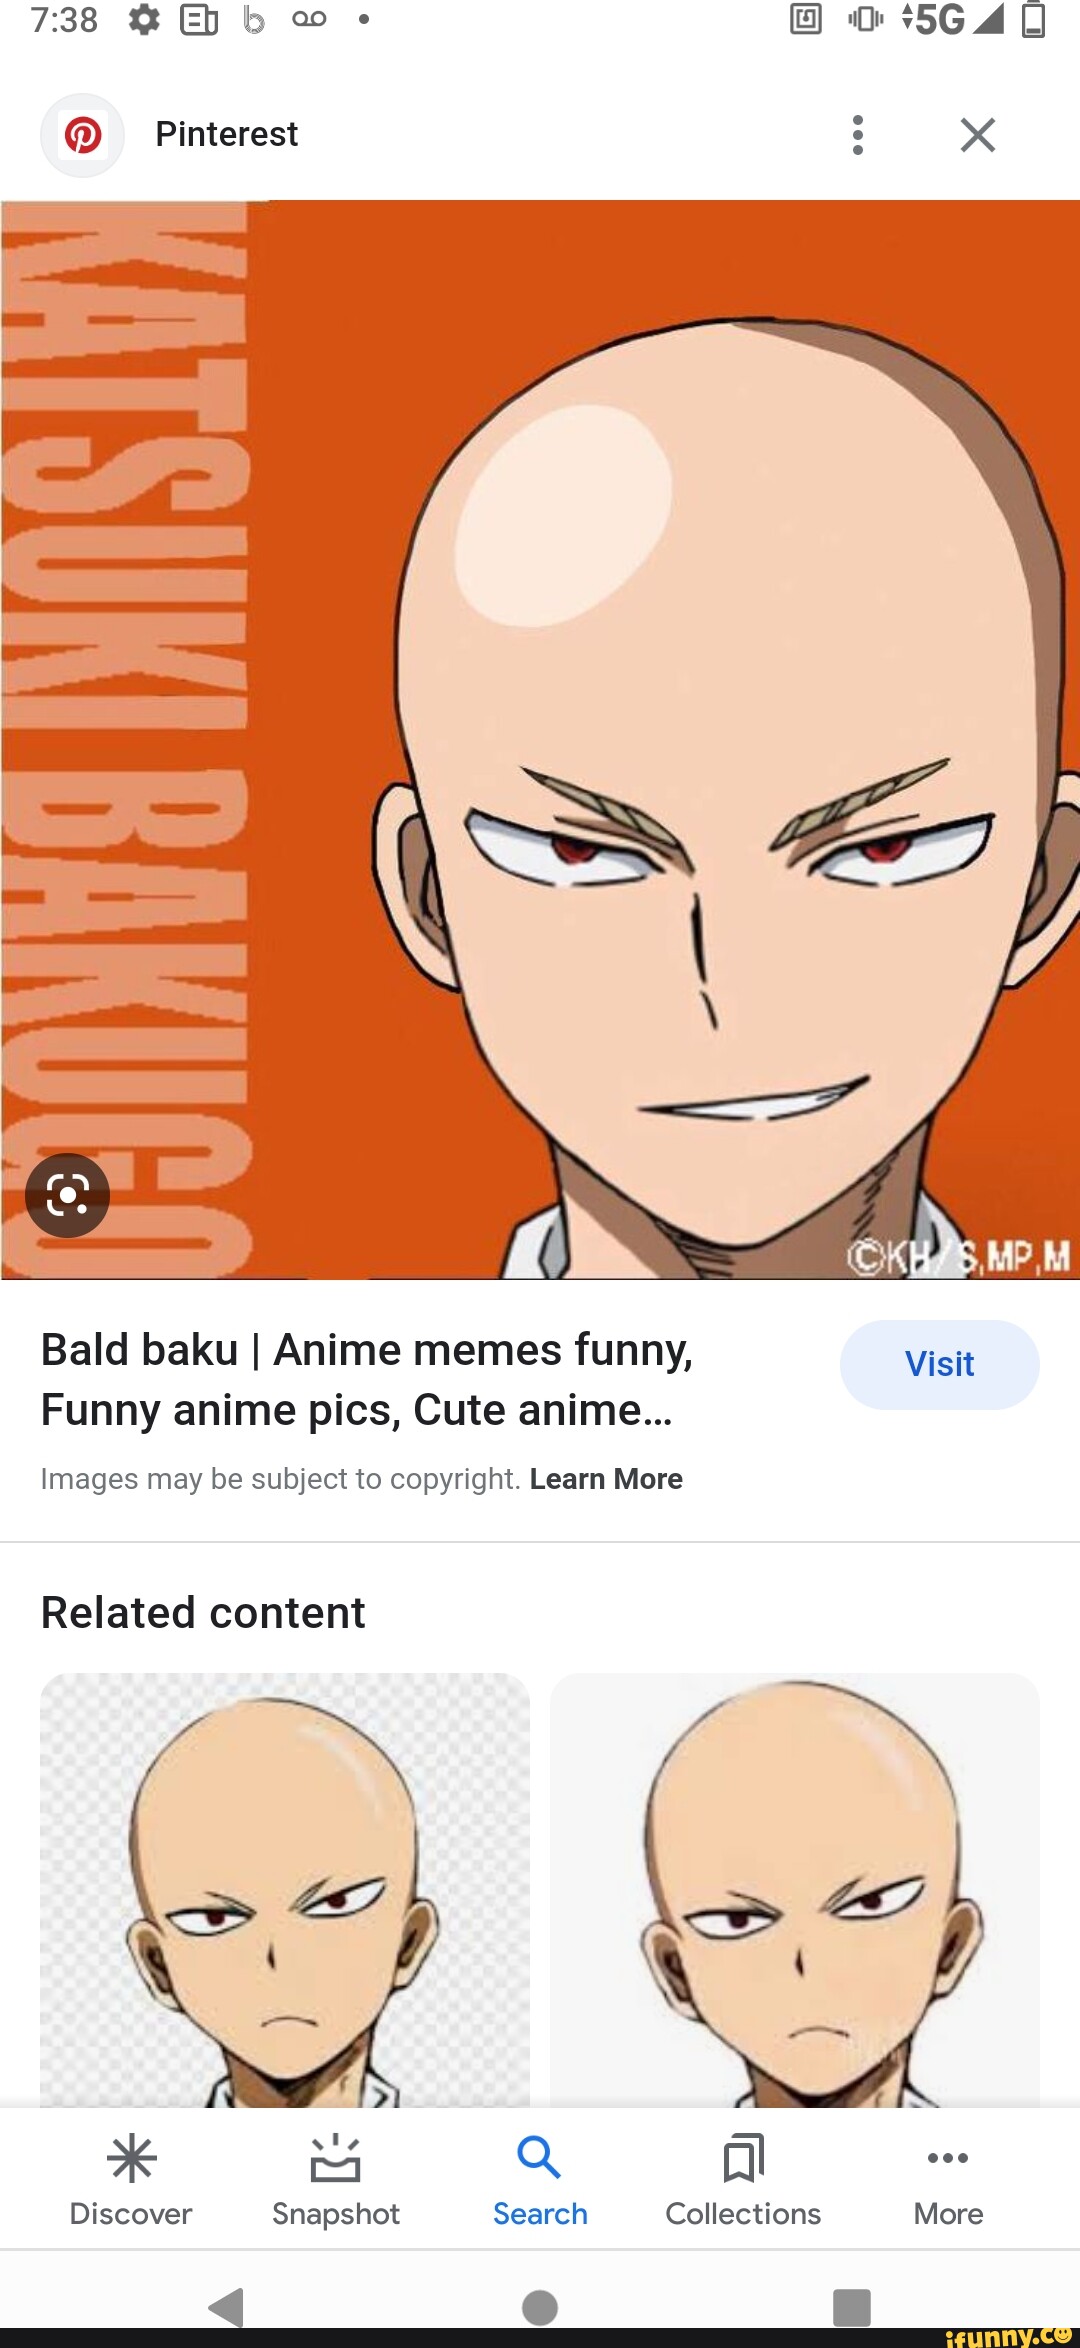 Anime memes on Pinterest